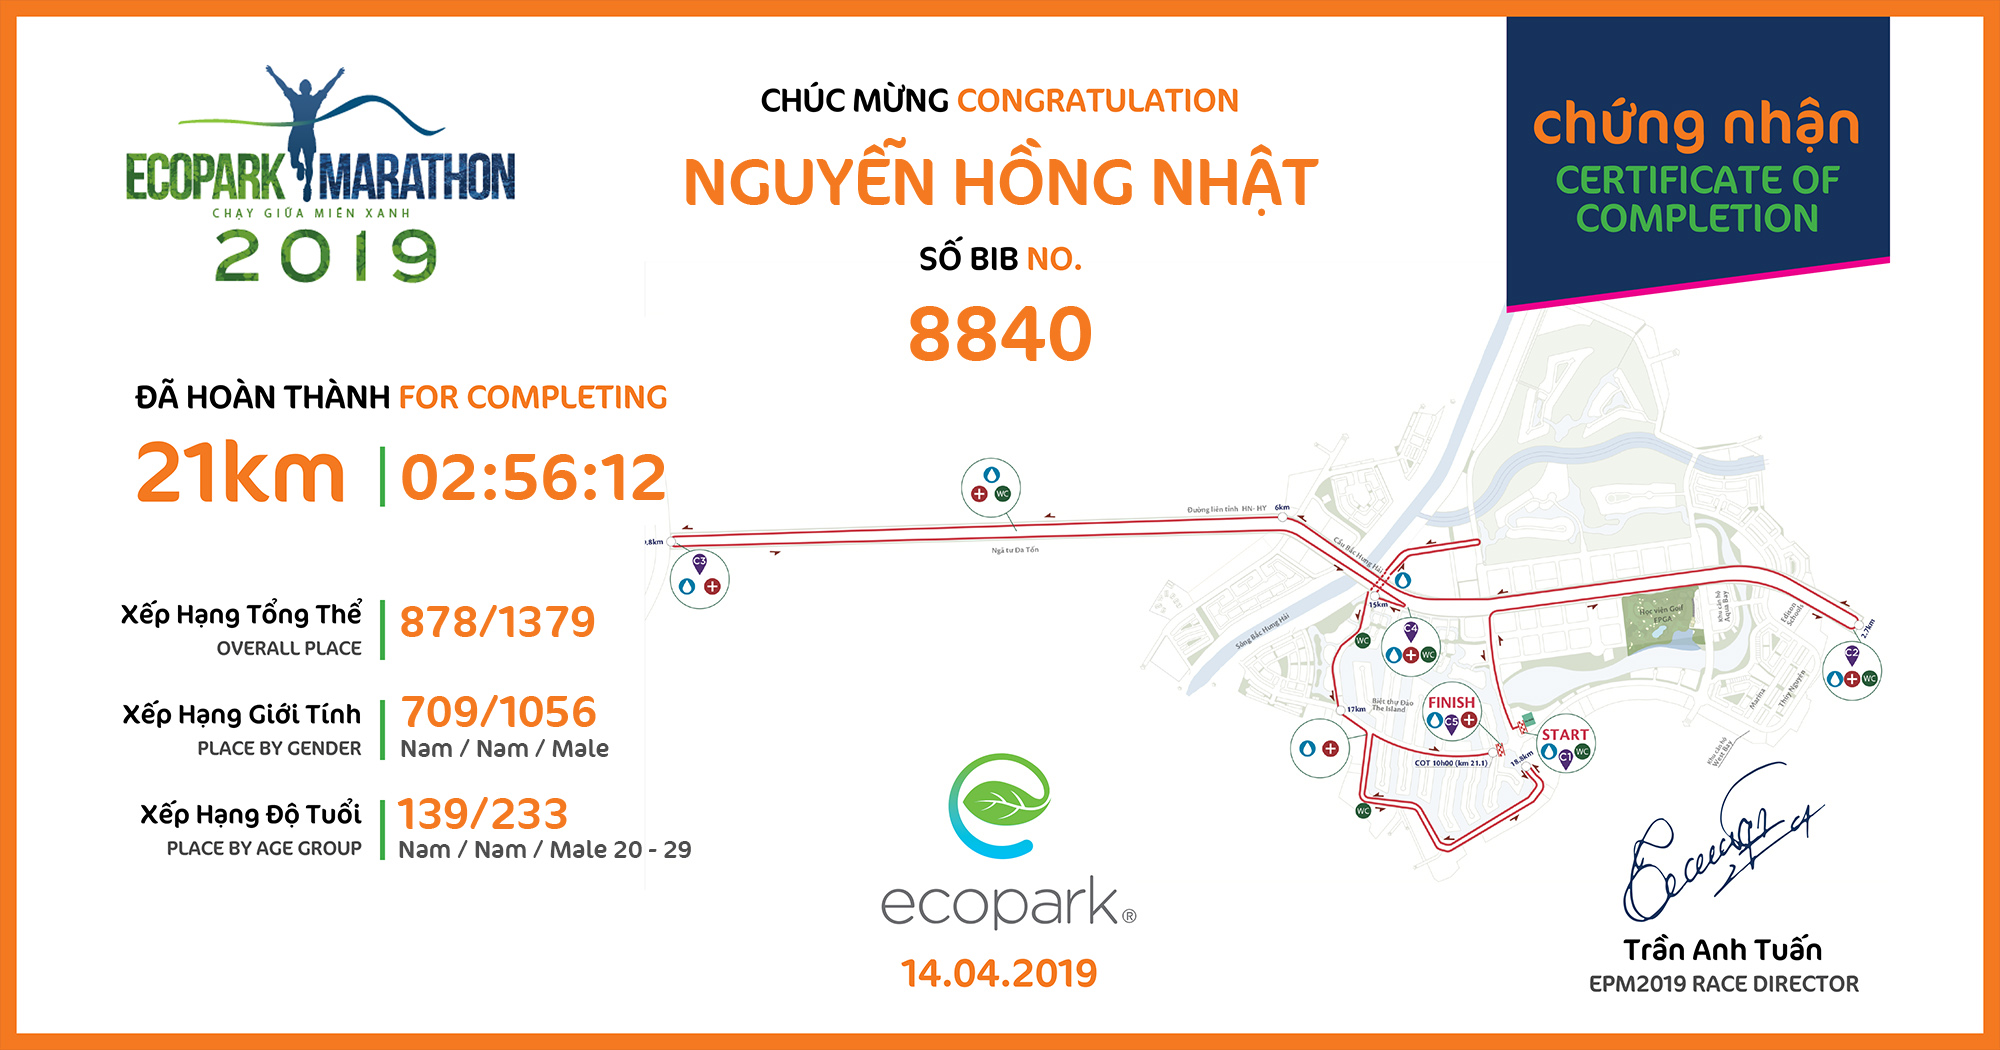 8840 - Nguyễn Hồng Nhật